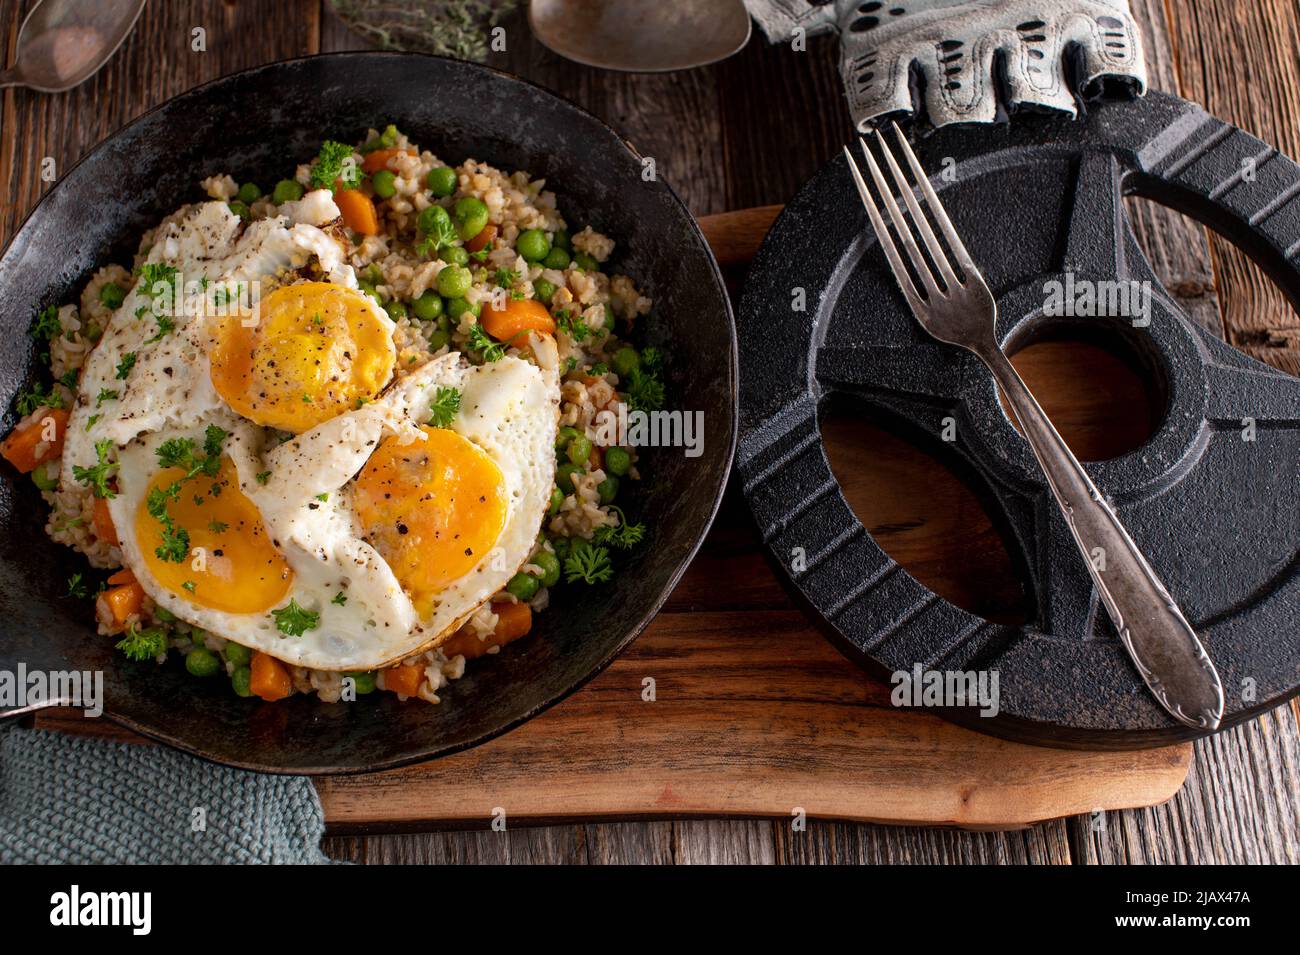 Fitnessmenü mit Spiegeleiern, braunem Reis und Gemüse Stockfoto